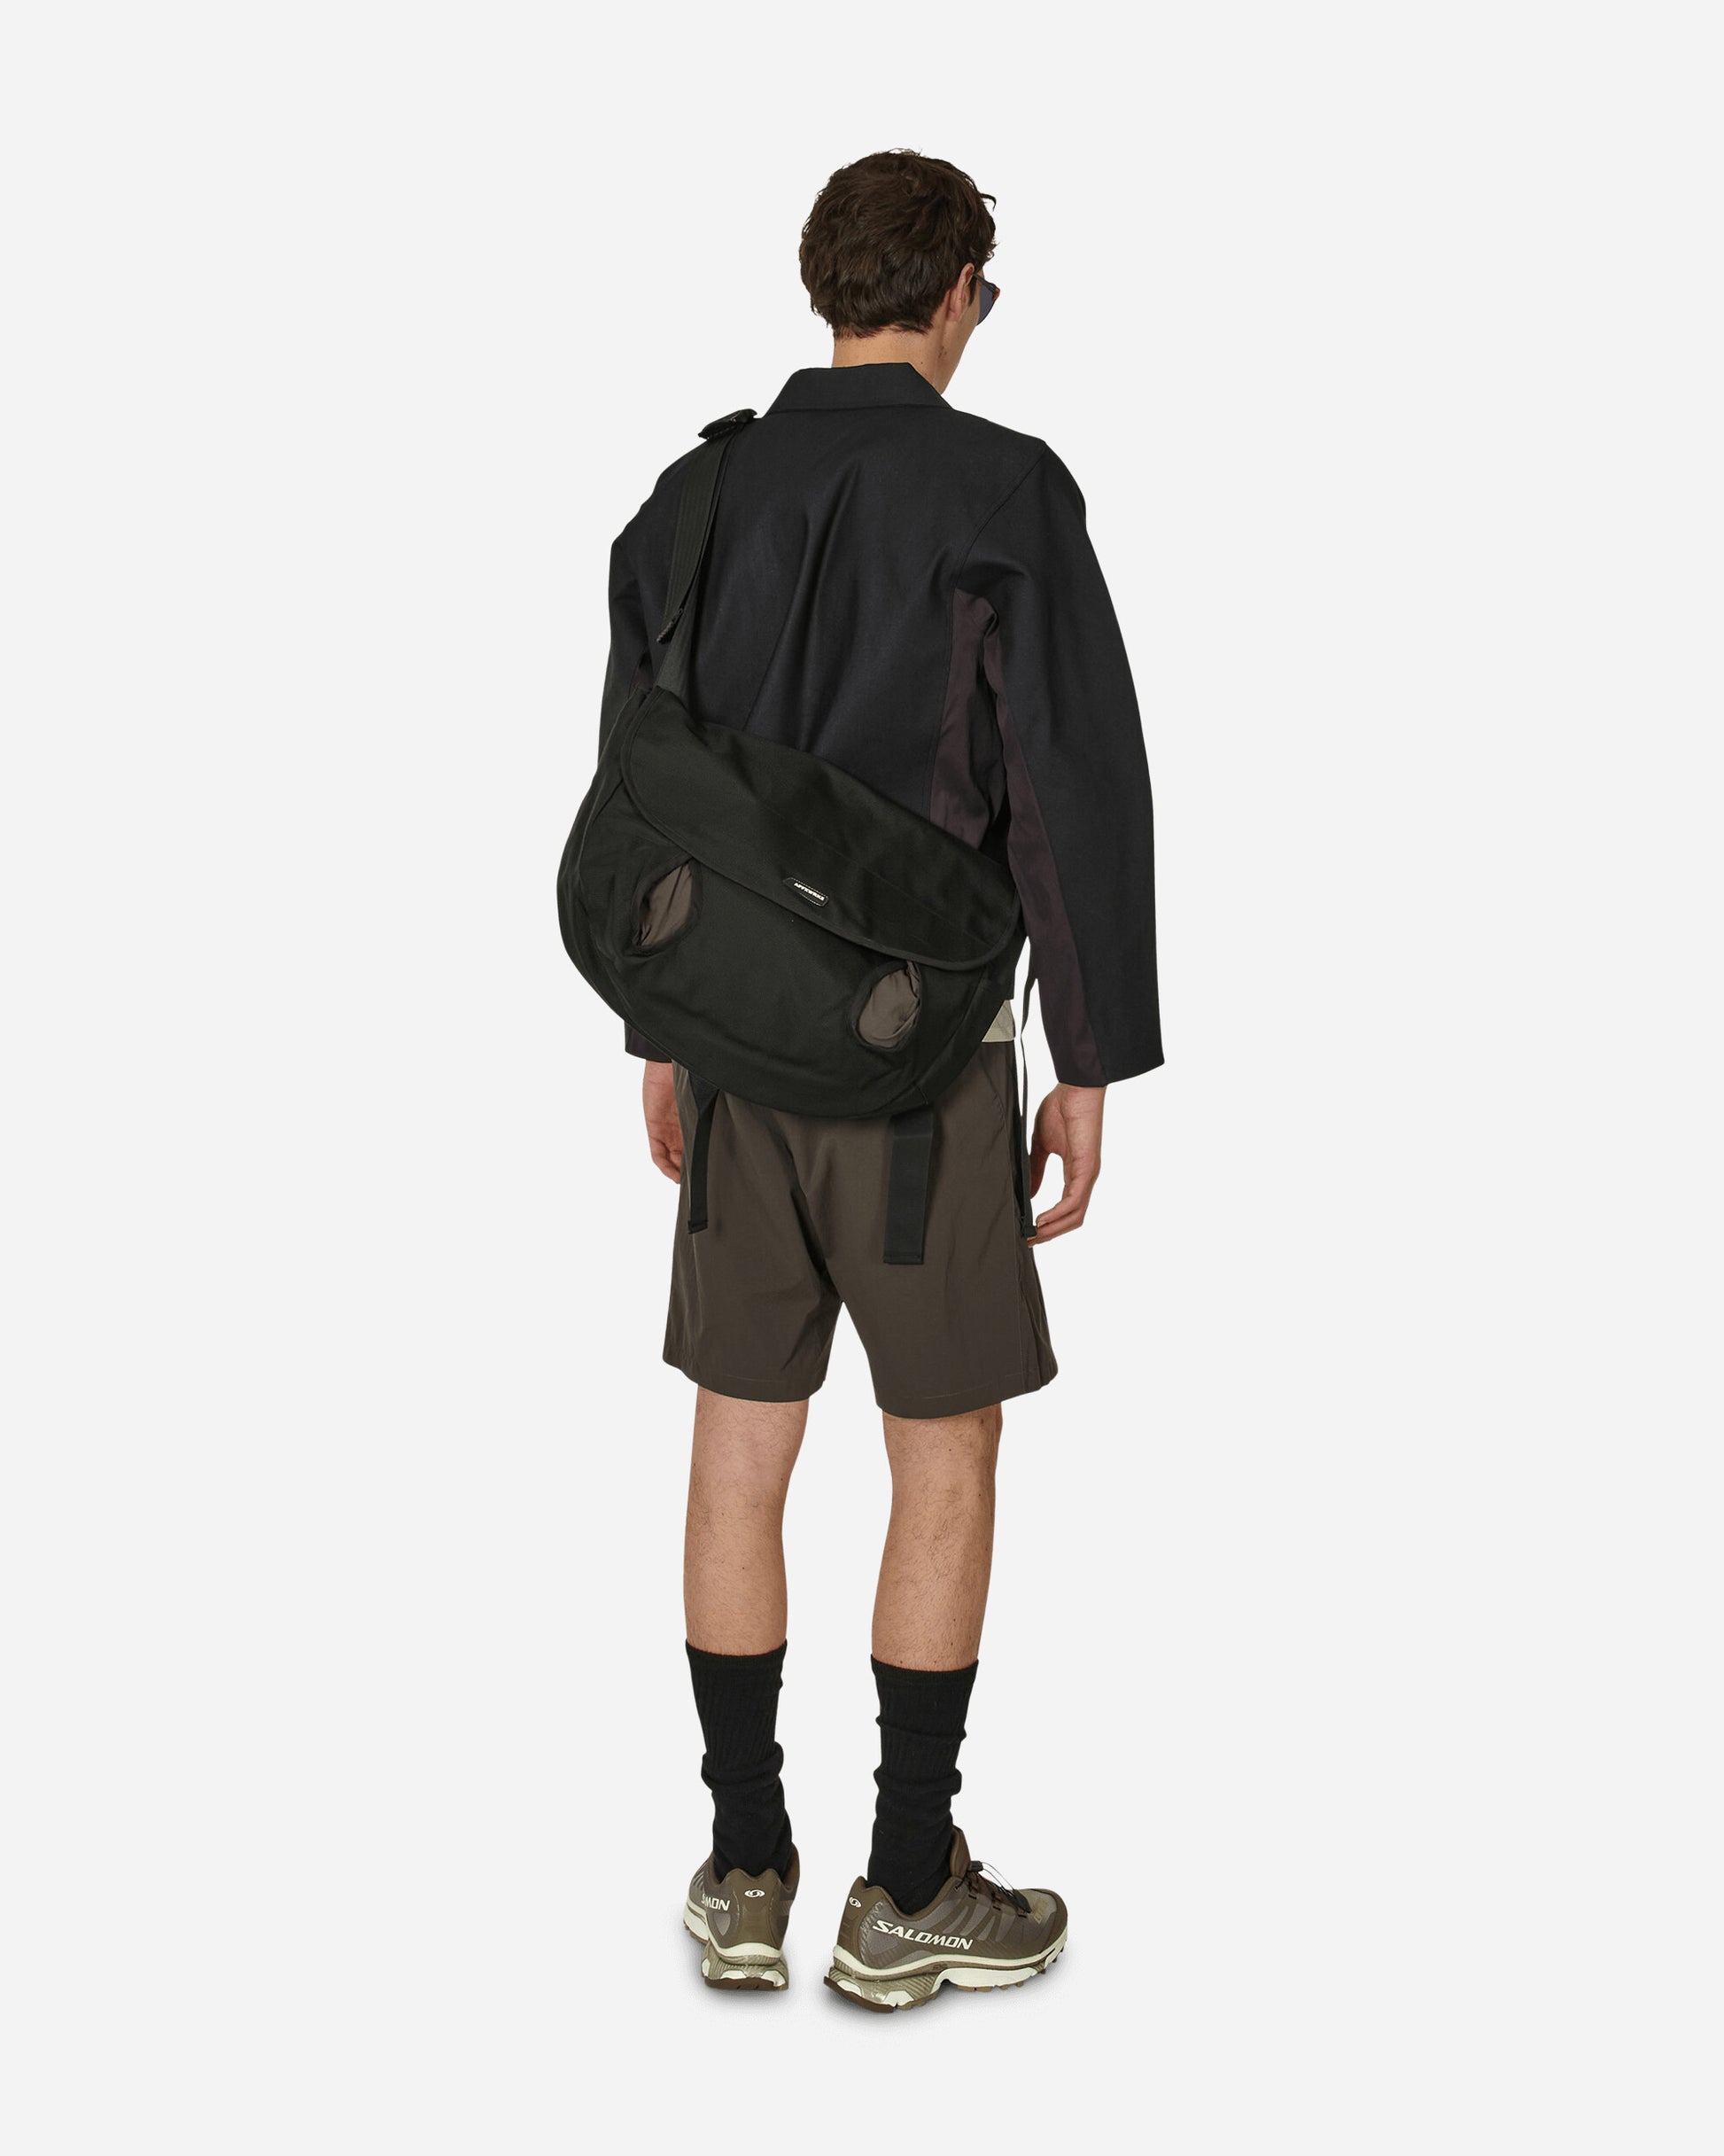 AFFXWRKS Rabin Messenger Bag Black/Shale Brown Bags and Backpacks Shoulder Bags SS24AC01 BLSHB